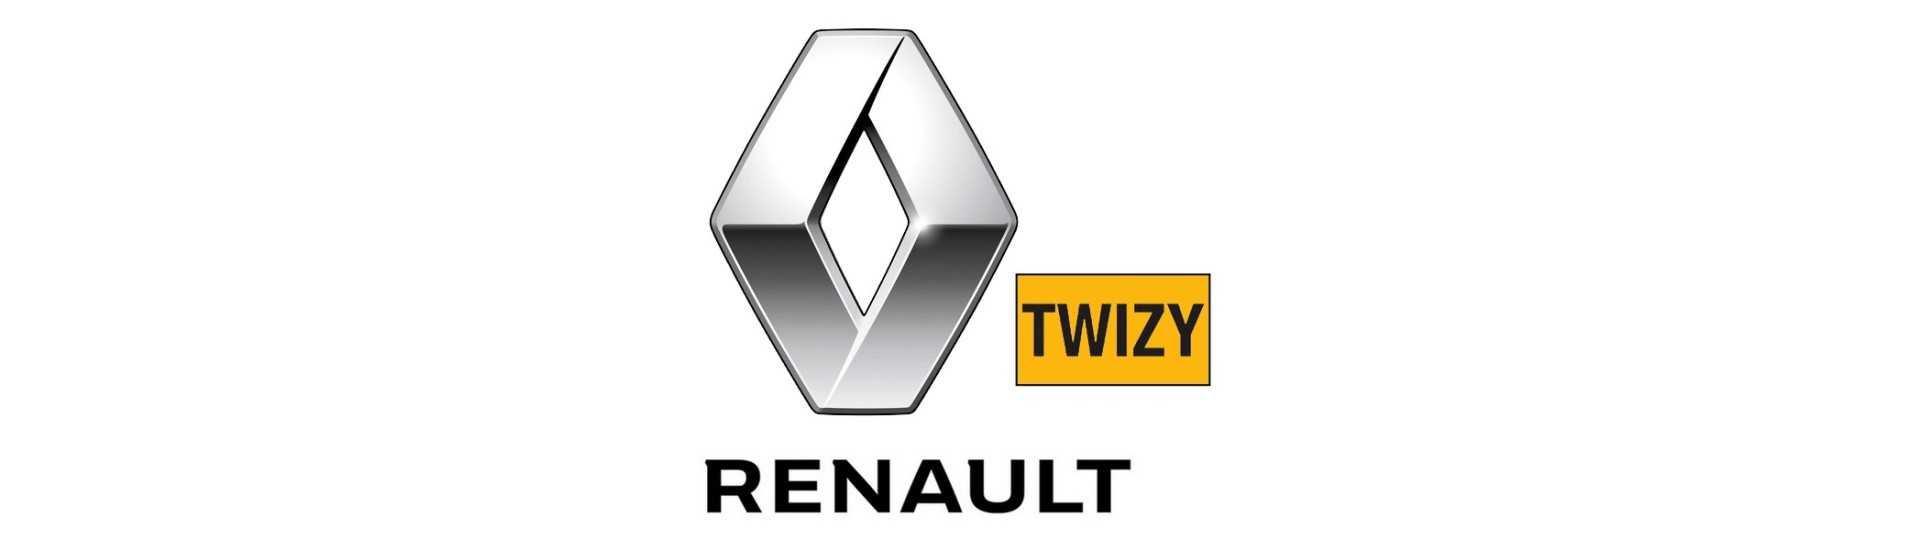 Catadioptre al miglior prezzo per auto senza permesso Renault Twizy